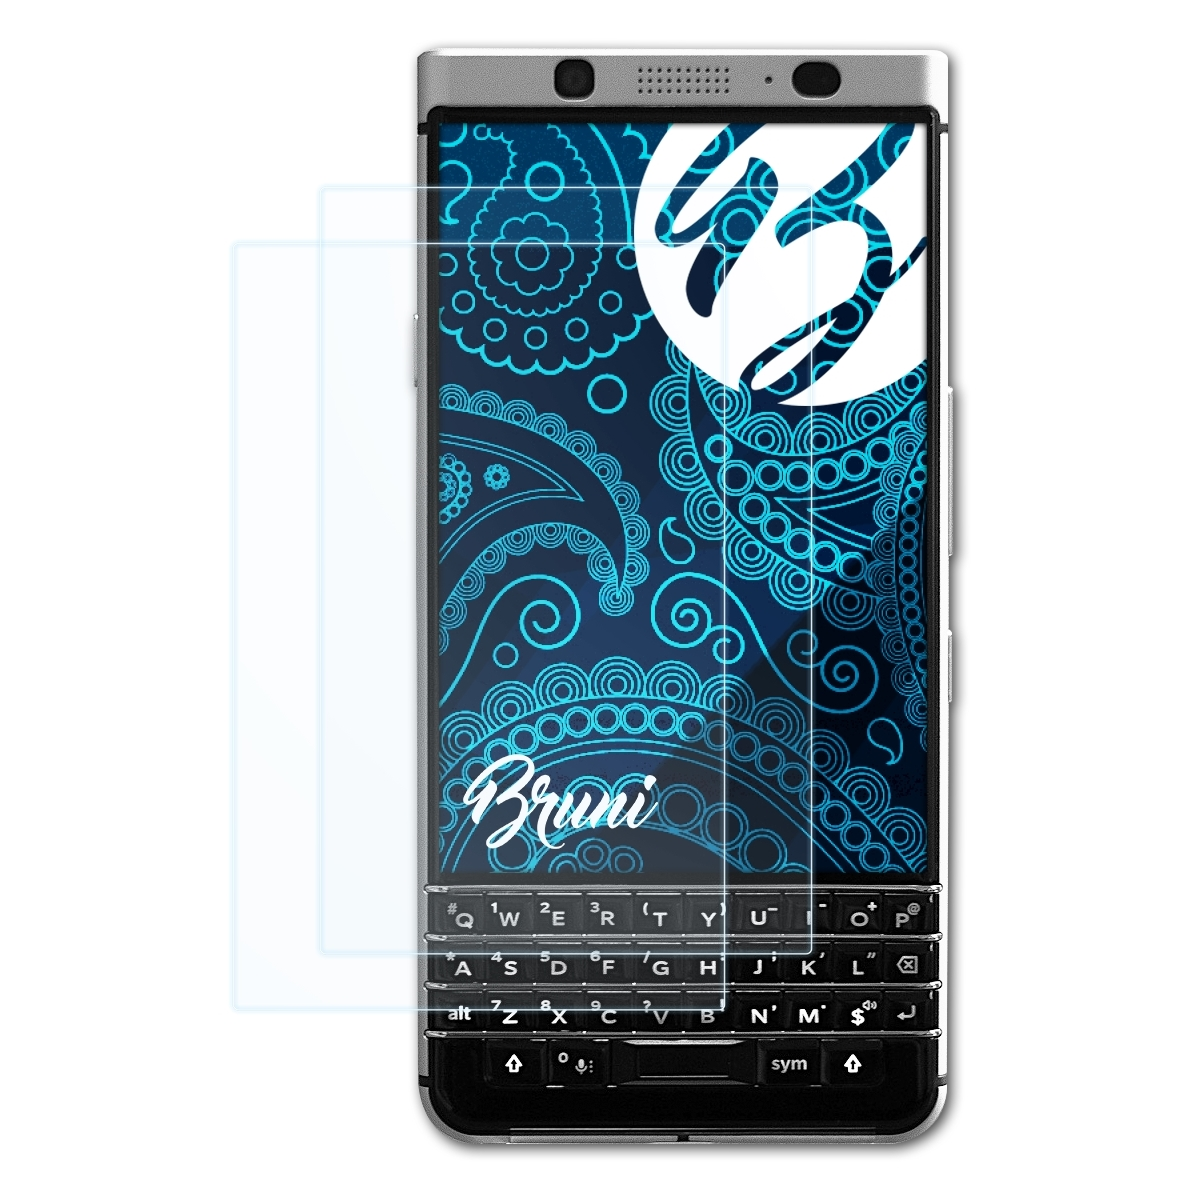 2x BRUNI Schutzfolie(für KeyOne) Blackberry Basics-Clear